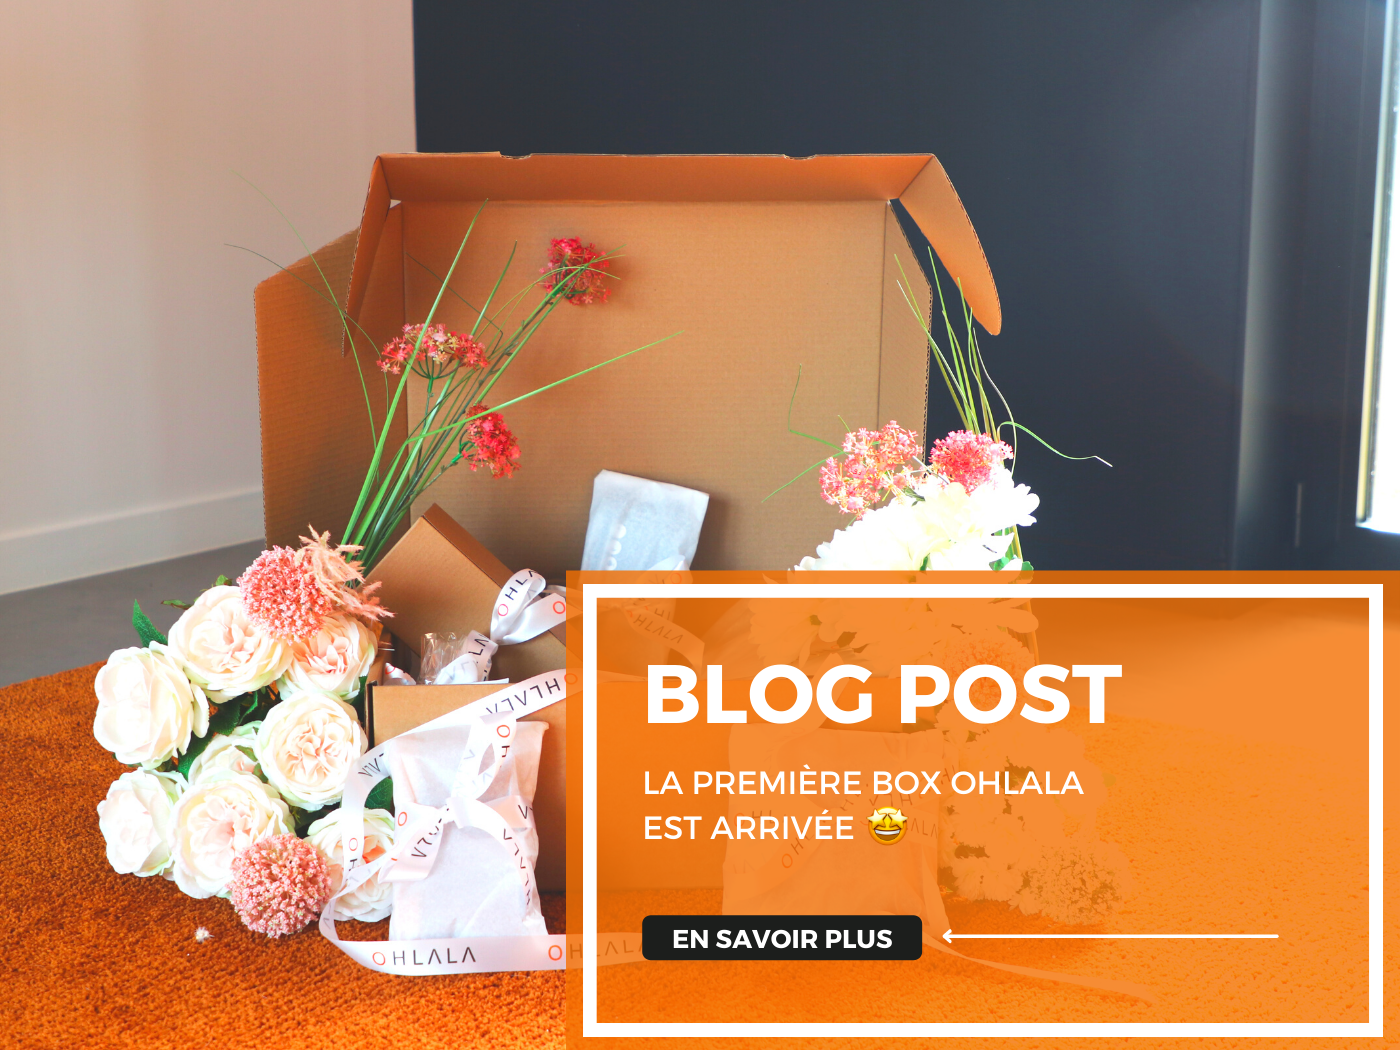 Visuel présentant un nouveau blog post sur la Box Ohlala